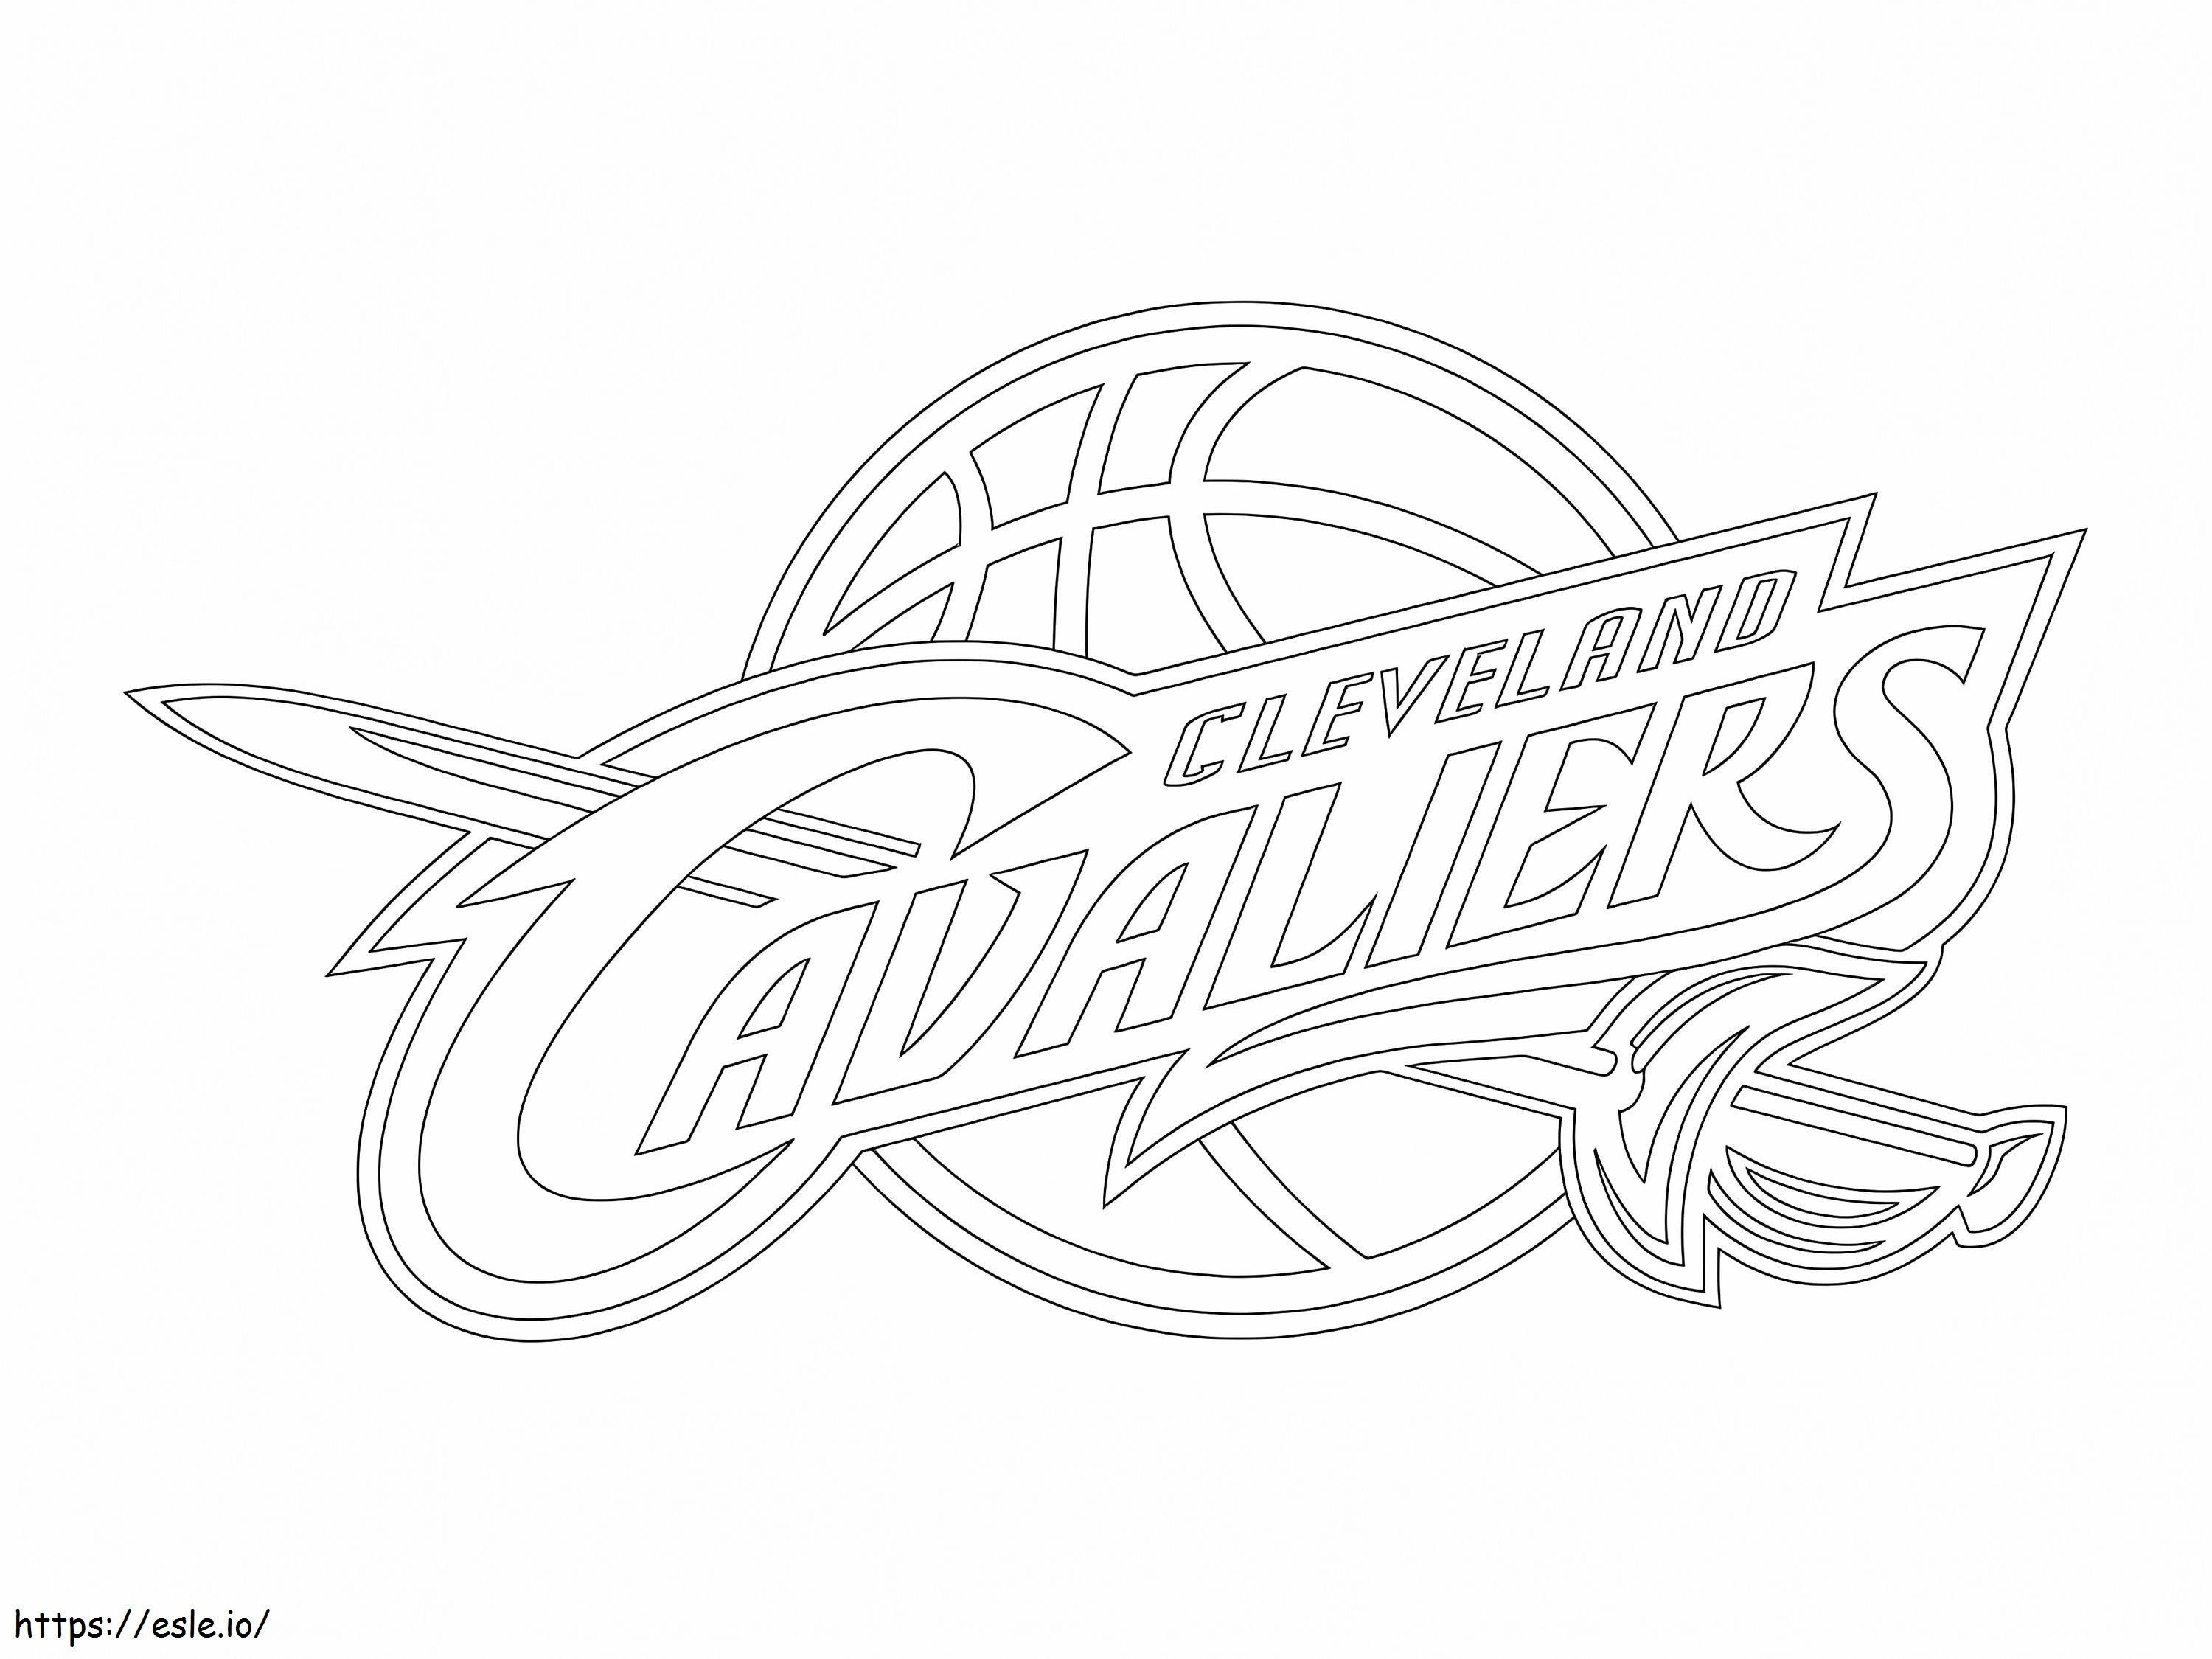 Cleveland Cavaliers-logo kleurplaat kleurplaat